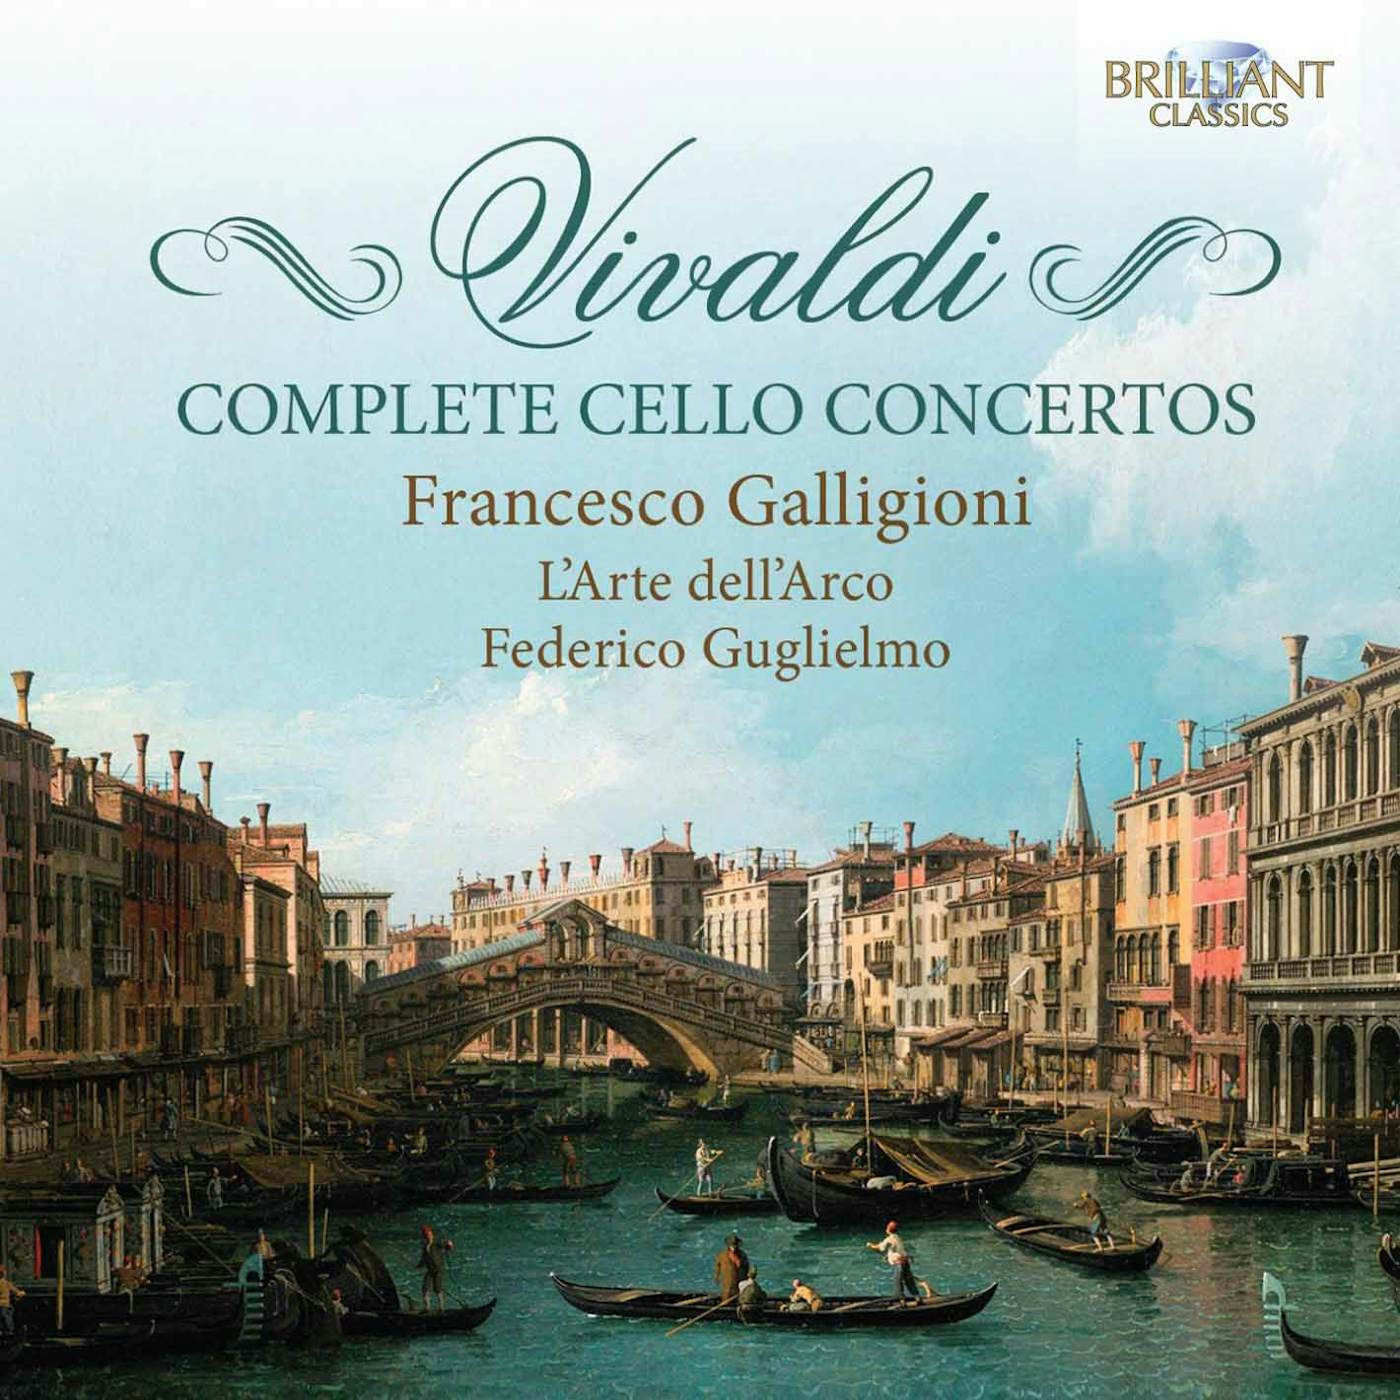 Antonio Vivaldi COMPLETE CELLO CONCERTOS CD